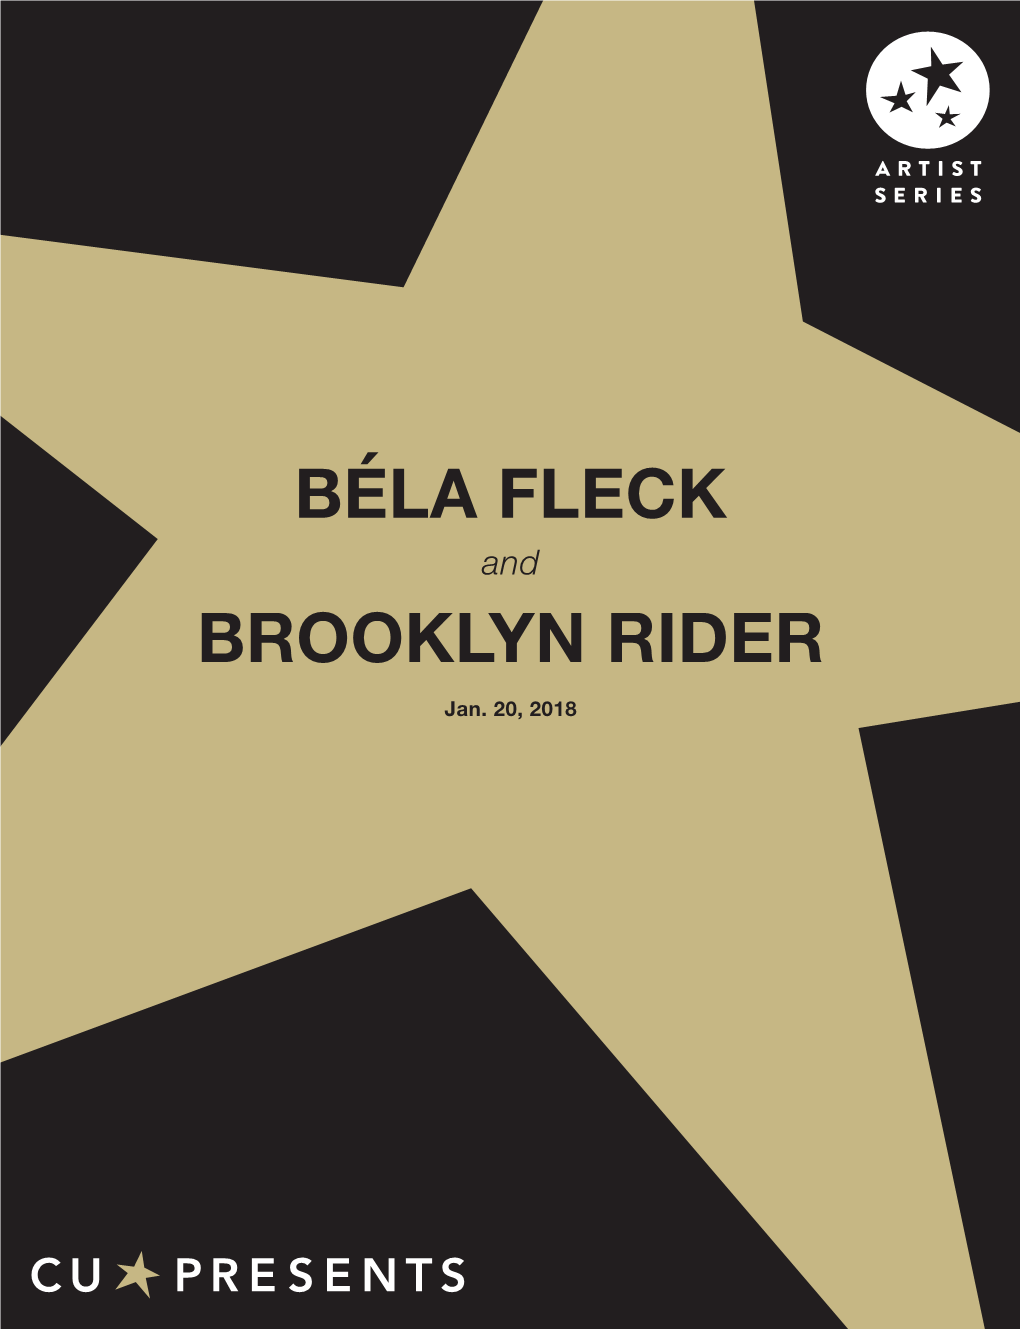 Bela Fleck and Brooklyn Rider